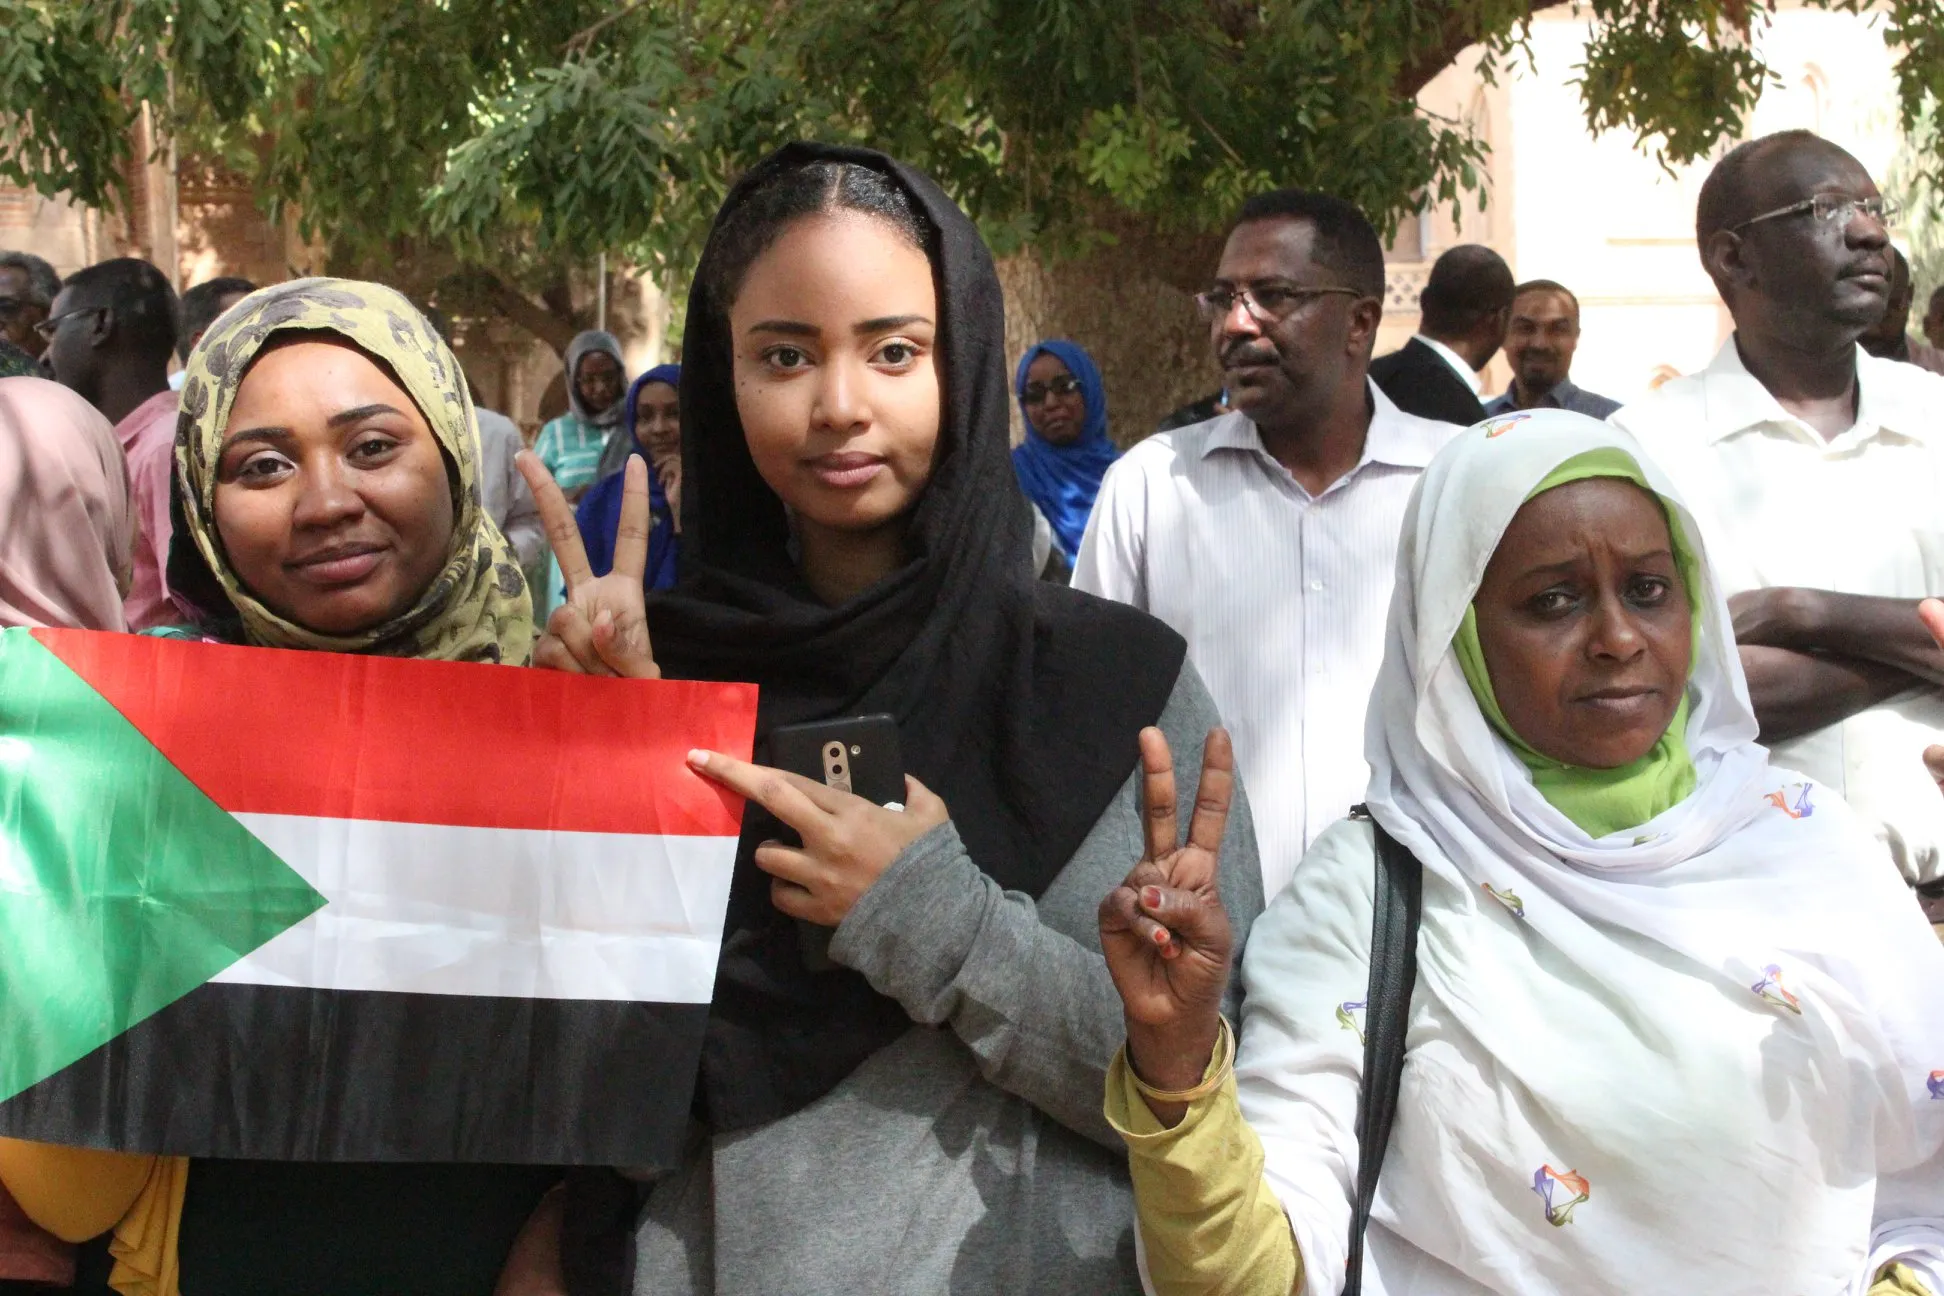 ظهرت الآن نتيجة القبول للجامعات السودانية 2021/2022 عبر موقع وزارة التعليم العالي والبحث العلمي admission.gov.sd